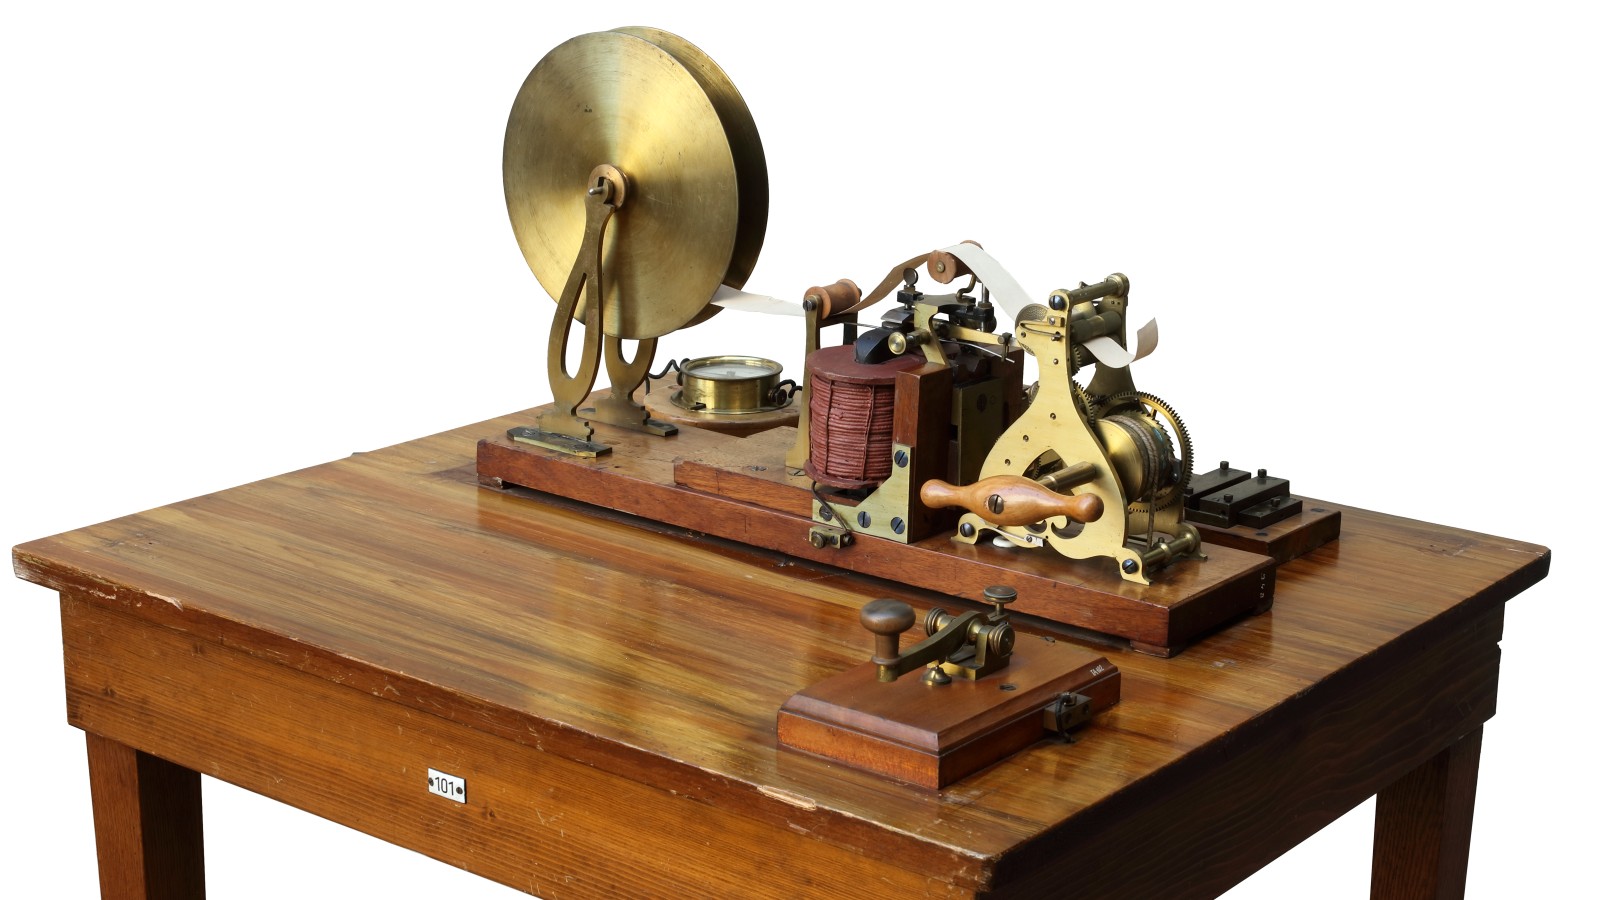 Ensemble eines Morsetelegrafenapparats mit einem amerikanischen Telegrafenrelais nach Alfred Vail, um 1850